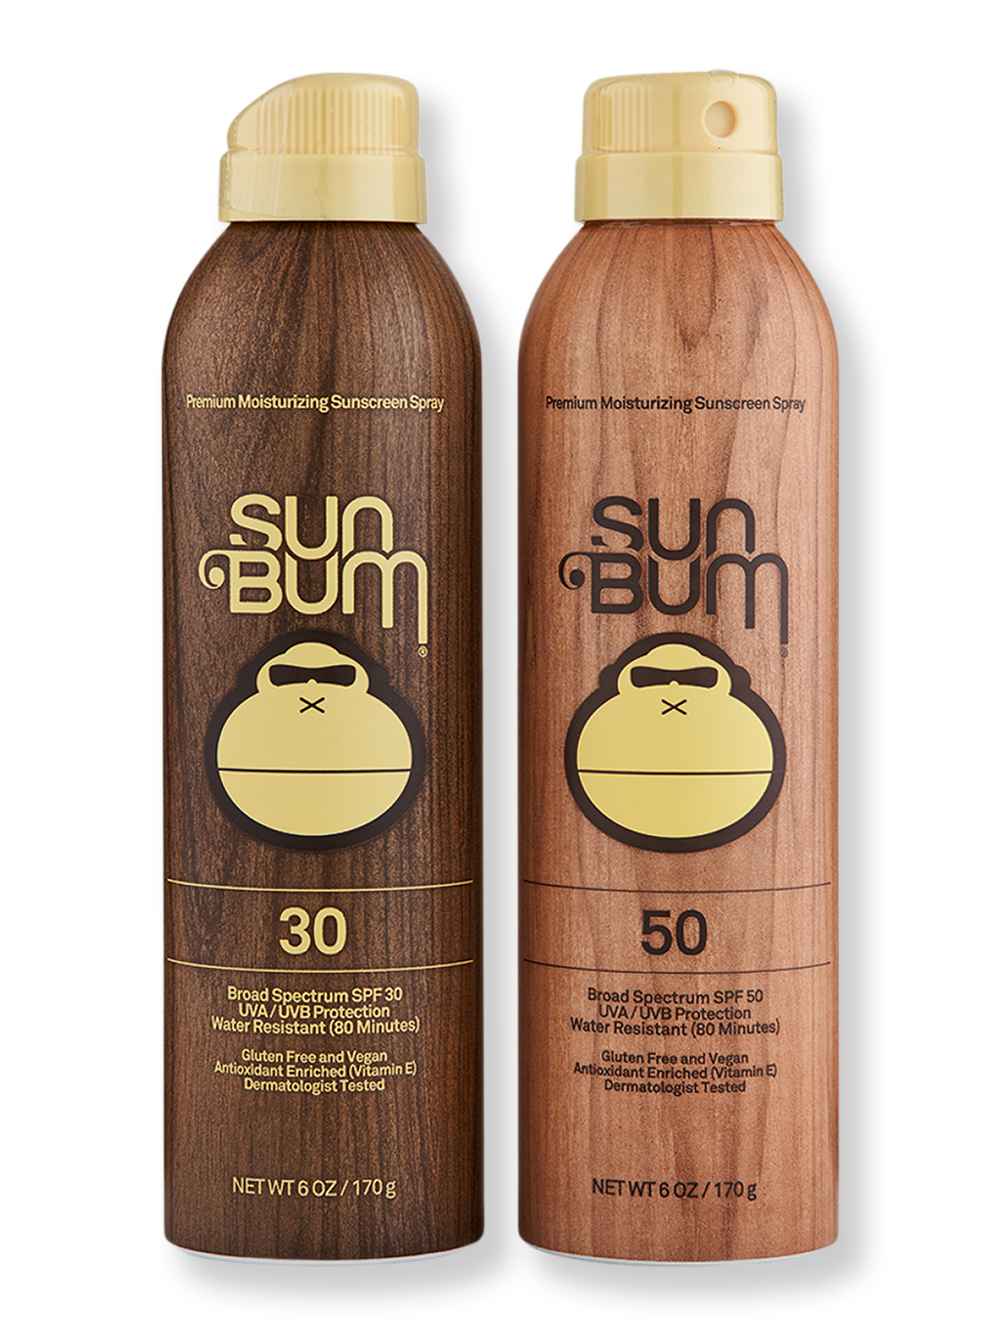 Sun Bum Sun Bum SPF 30 Sunscreen Spray 6 oz & SPF 50 Sunscreen Spray 6 oz Body Sunscreens 